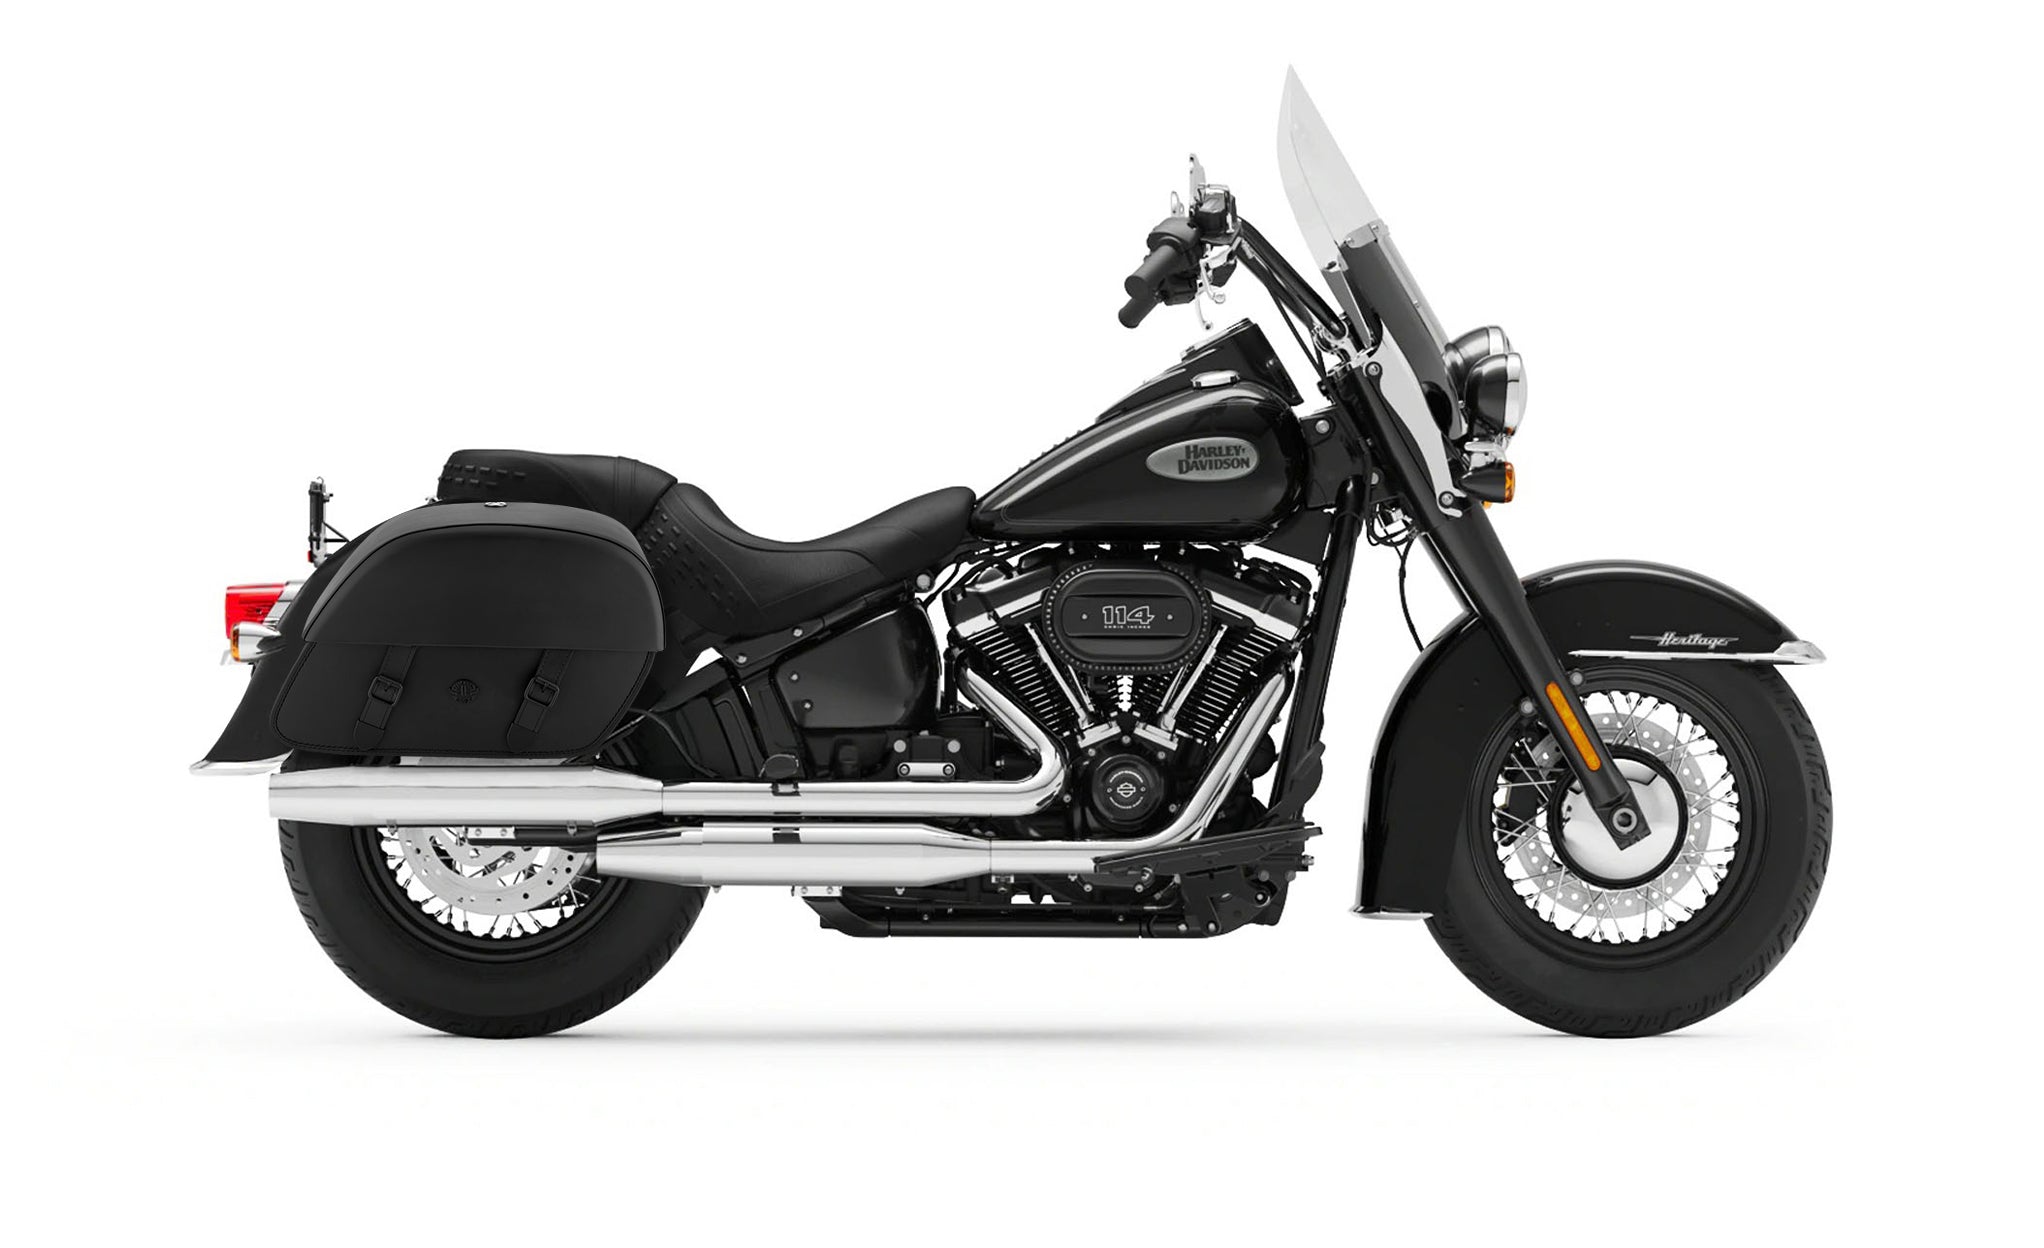 Viking Baelor Large Leather Motorcycle Saddlebags For Harley Davidson Softail Heritage Flst I C Ci on Bike Photo @expand